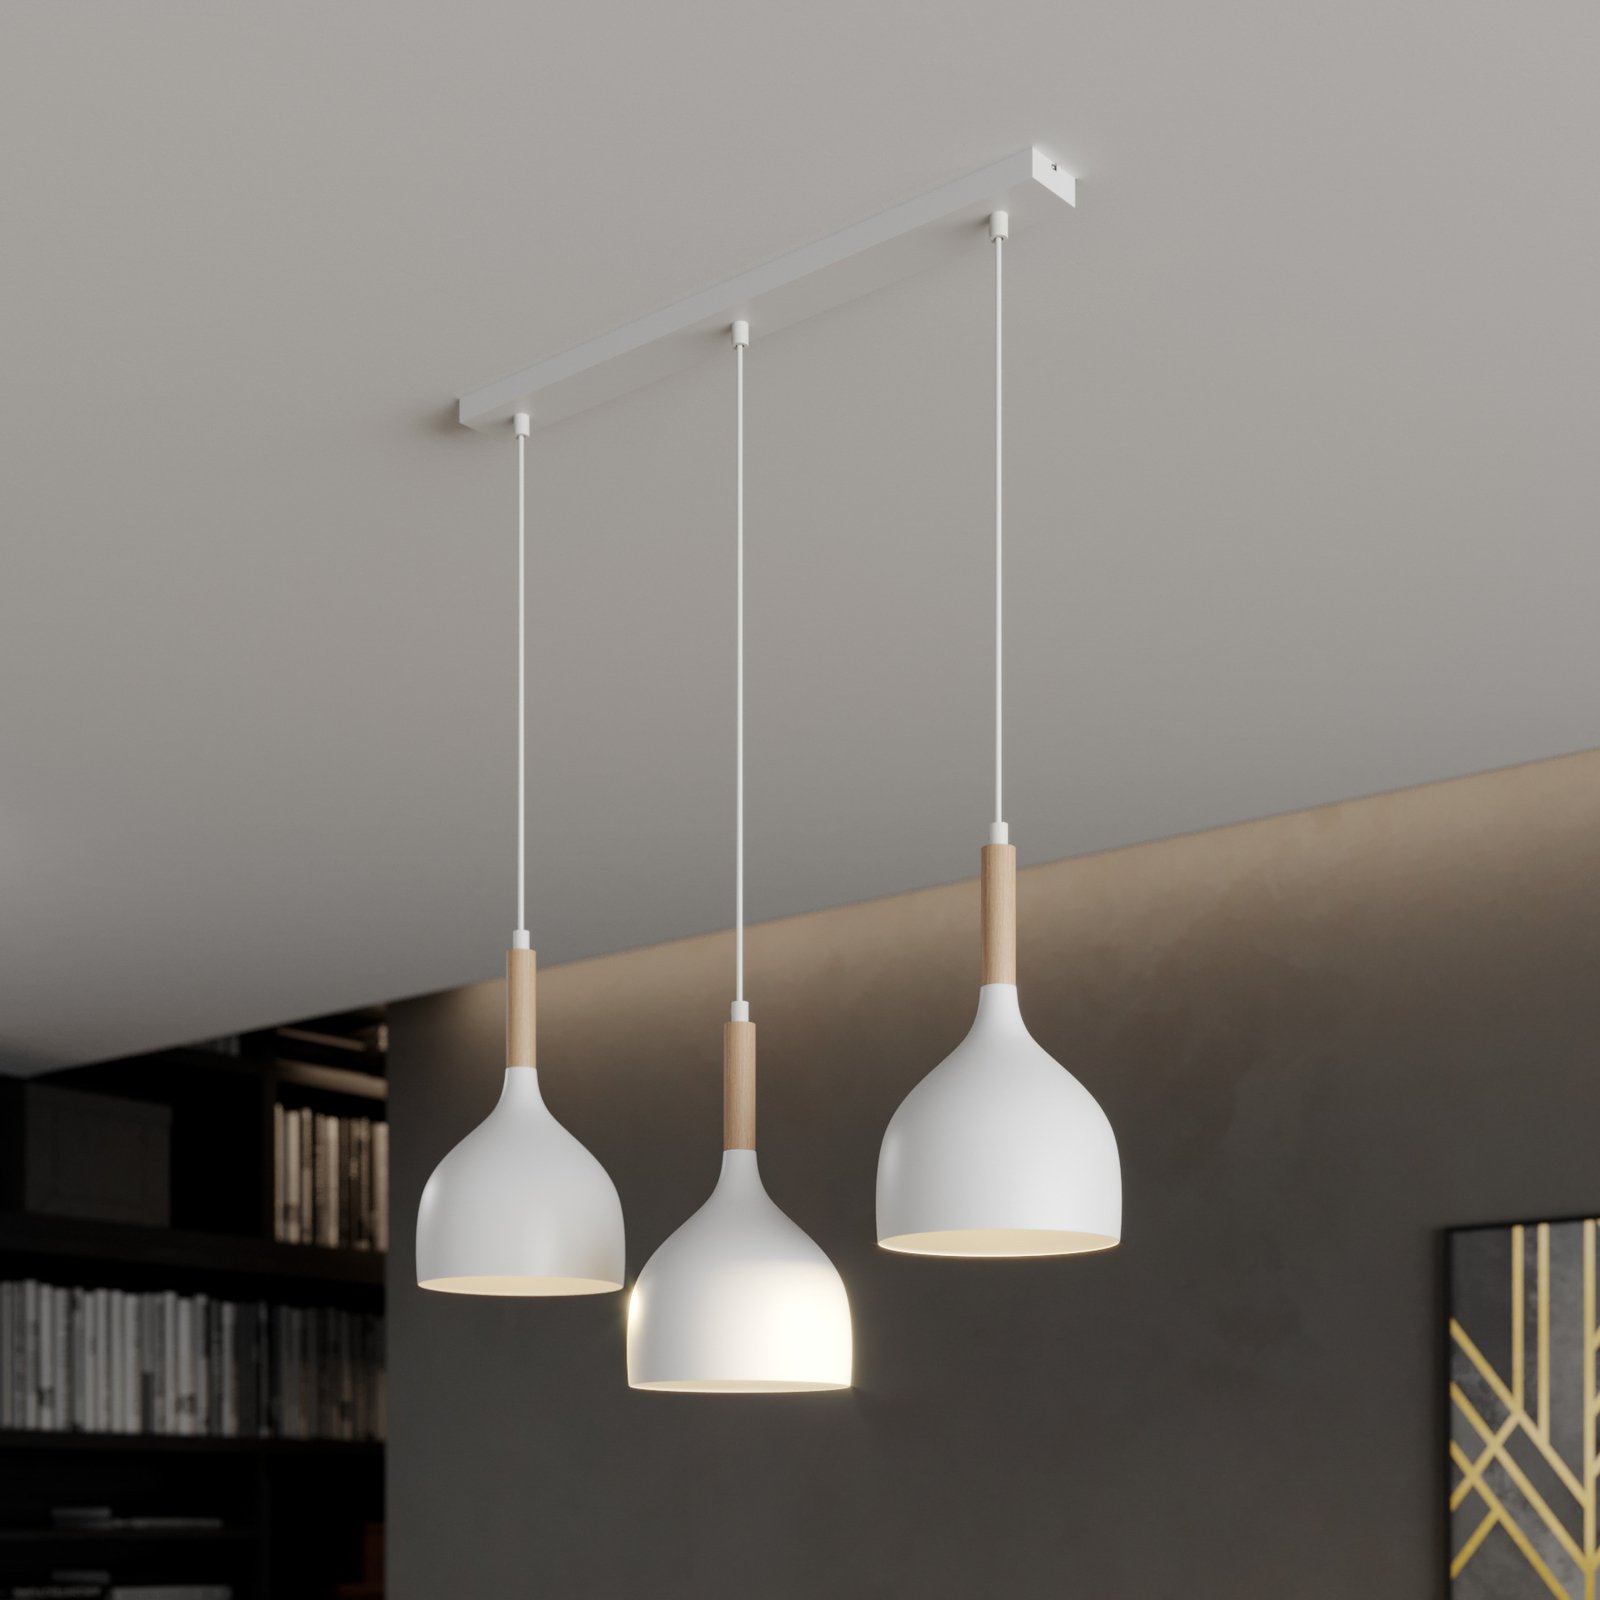 Noak hanglamp 3-lamps lang wit/hout naturel